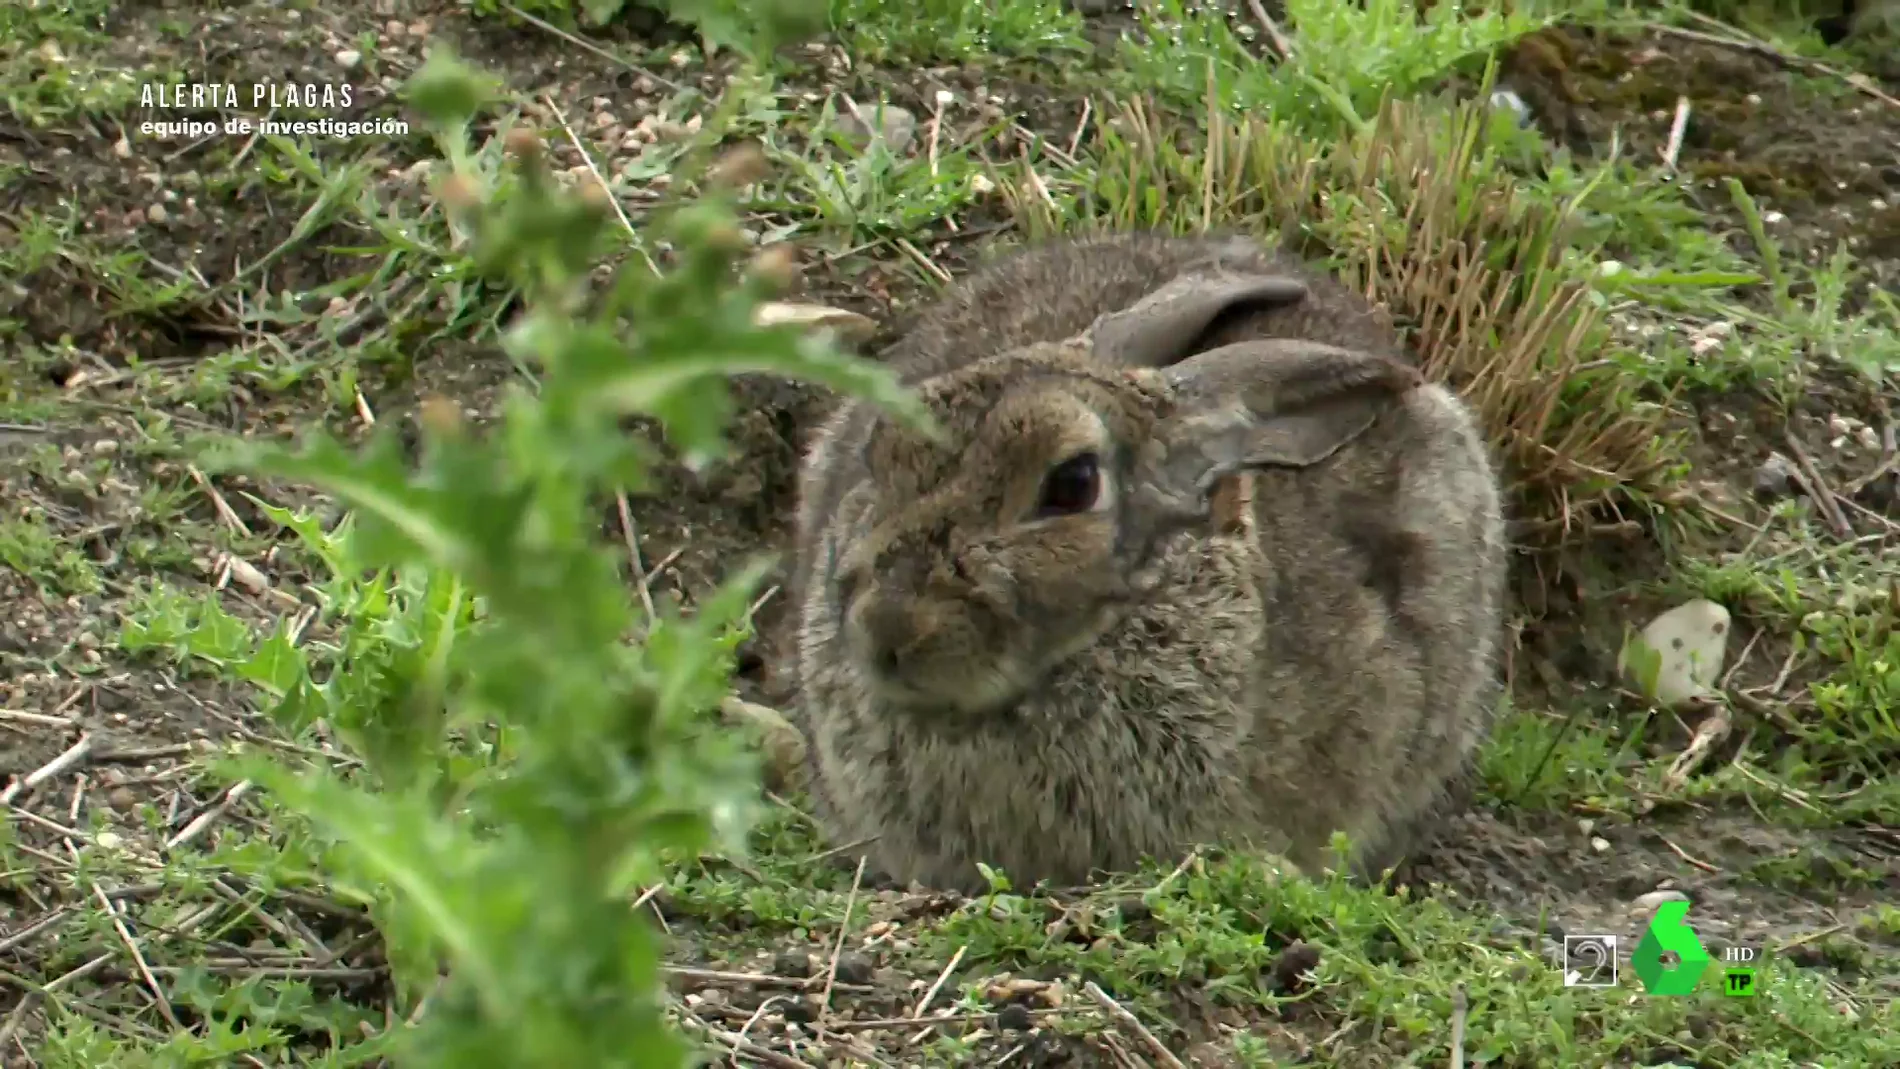 Los conejos, responsables del mayor brote de leishmaniosis en humanos de Europa: "Creí que me moría"